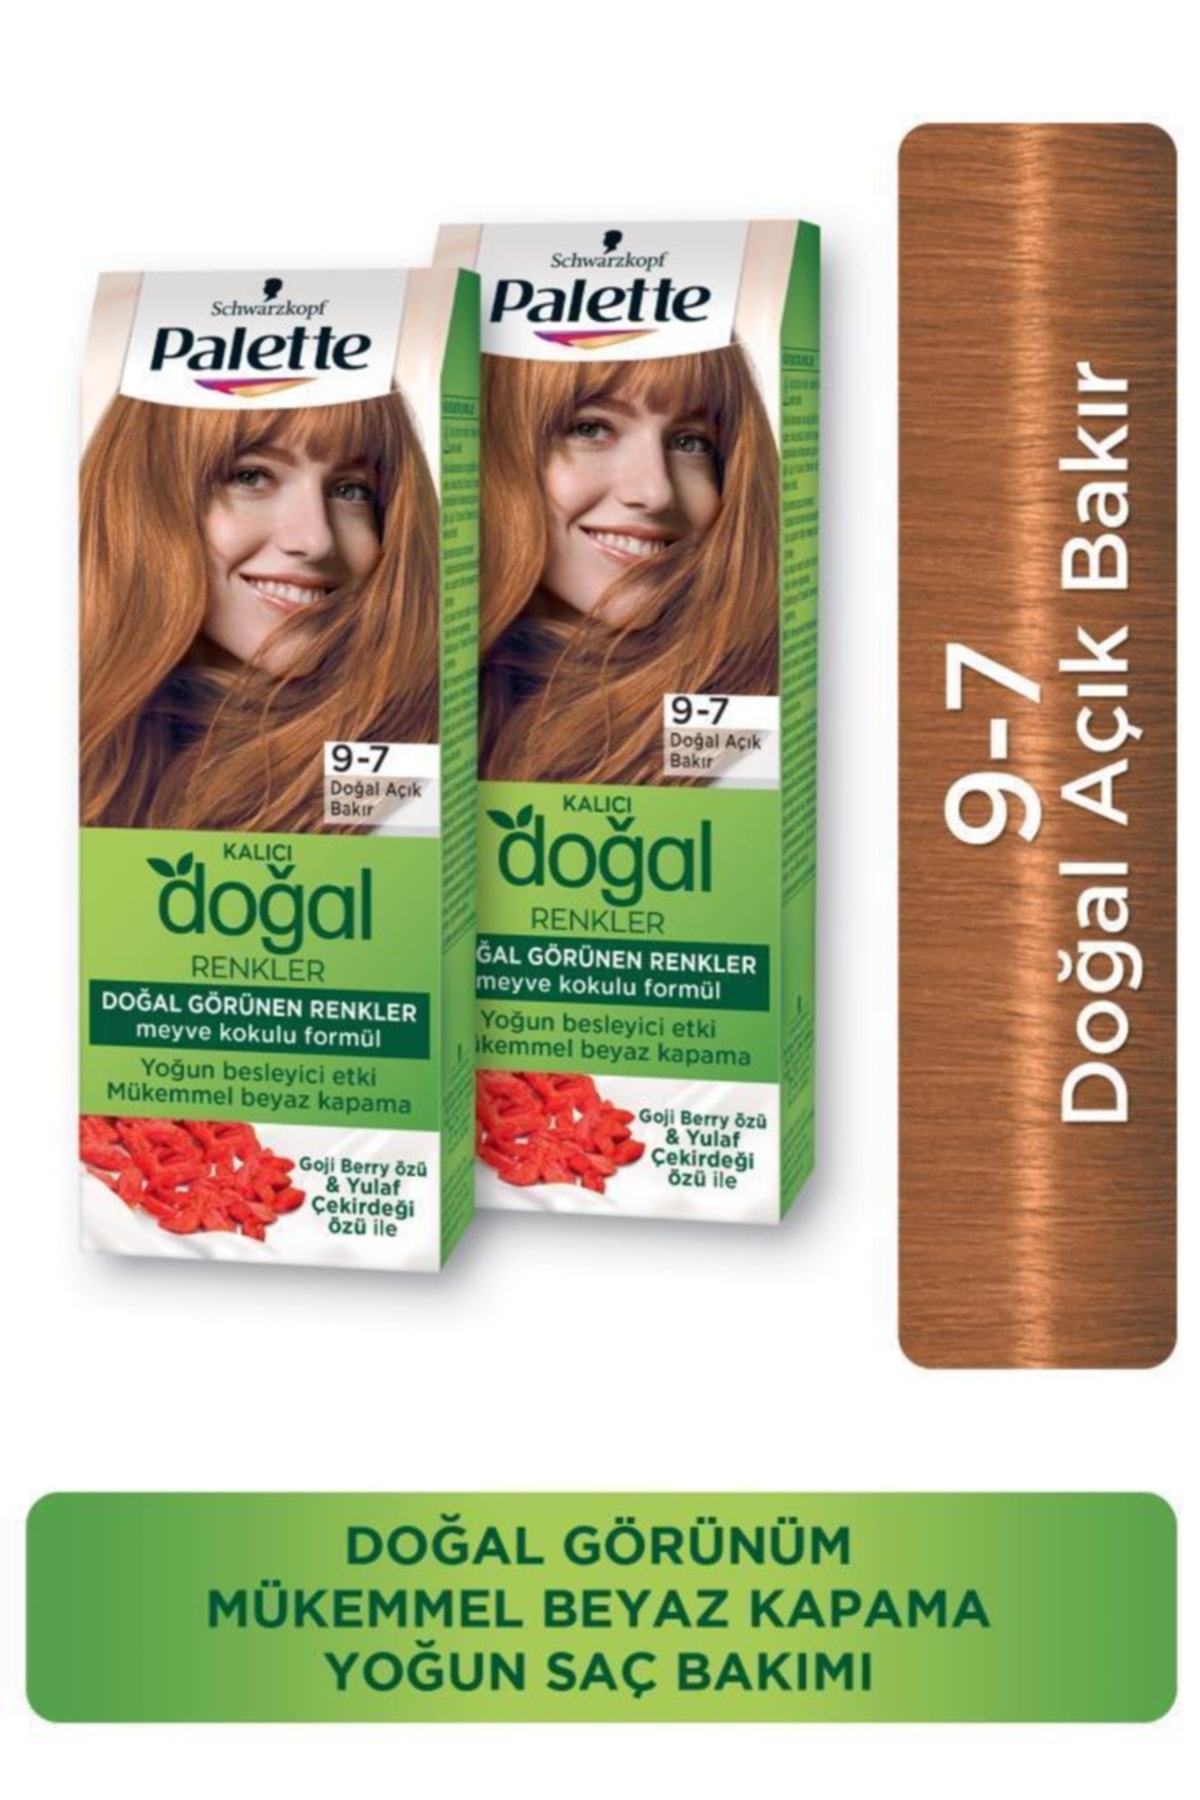 PALETTE NATURAL COLORS Palette Kalıcı Doğal Renkler Saç Boyası 9-7 Doğal Açık Bakır X 2 Adet